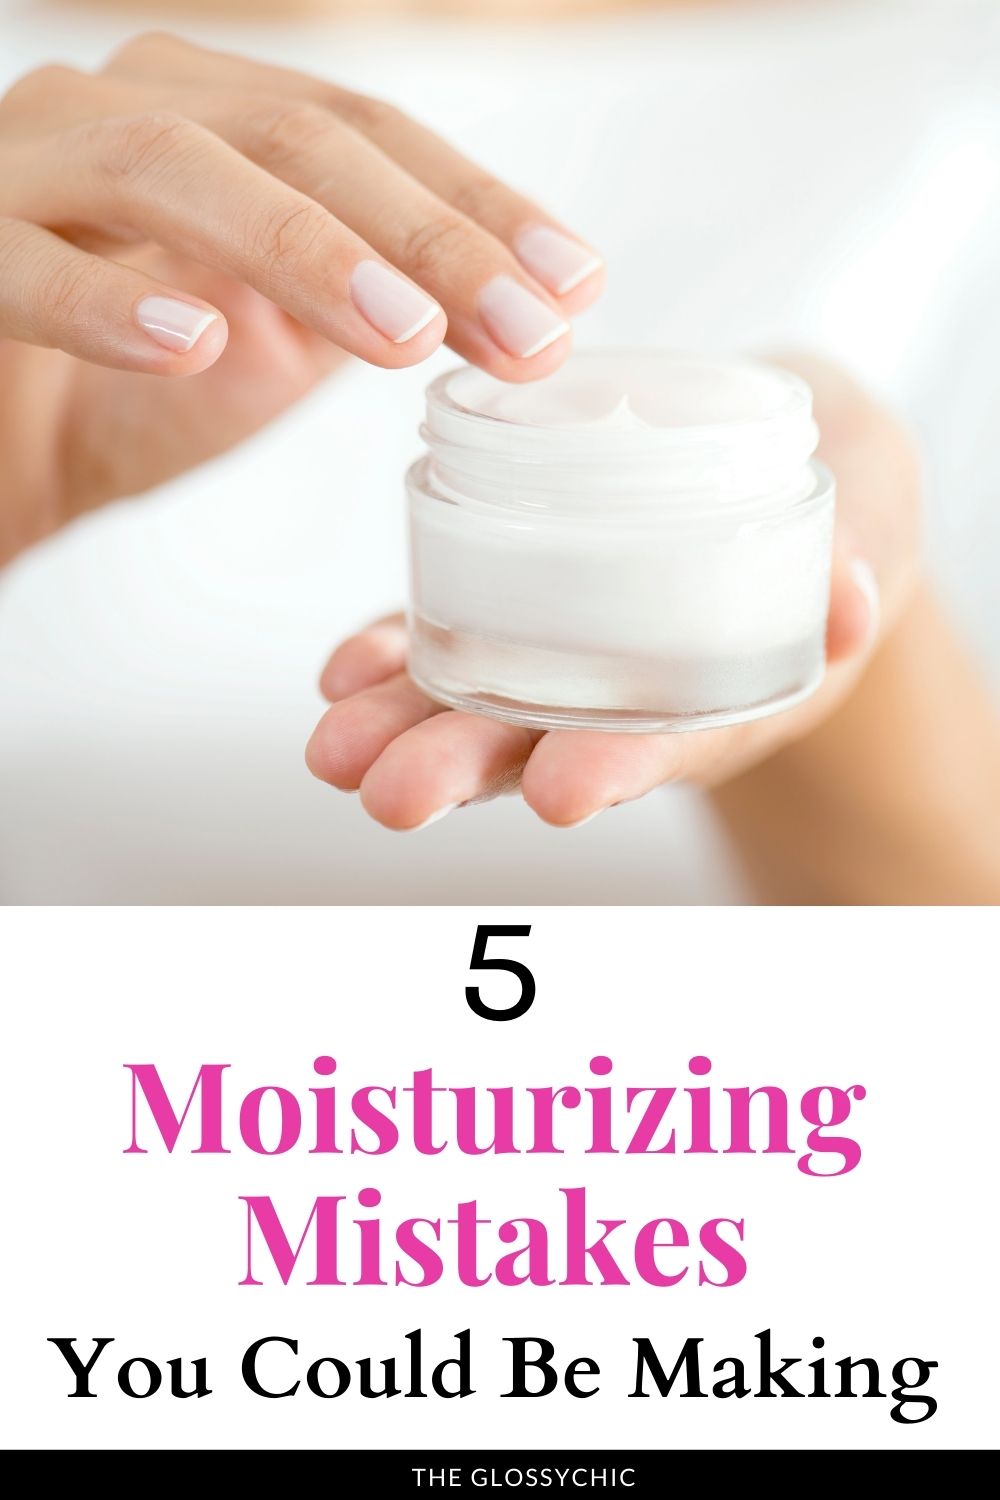 5 Common Moisturizing Mistakes To Avoid